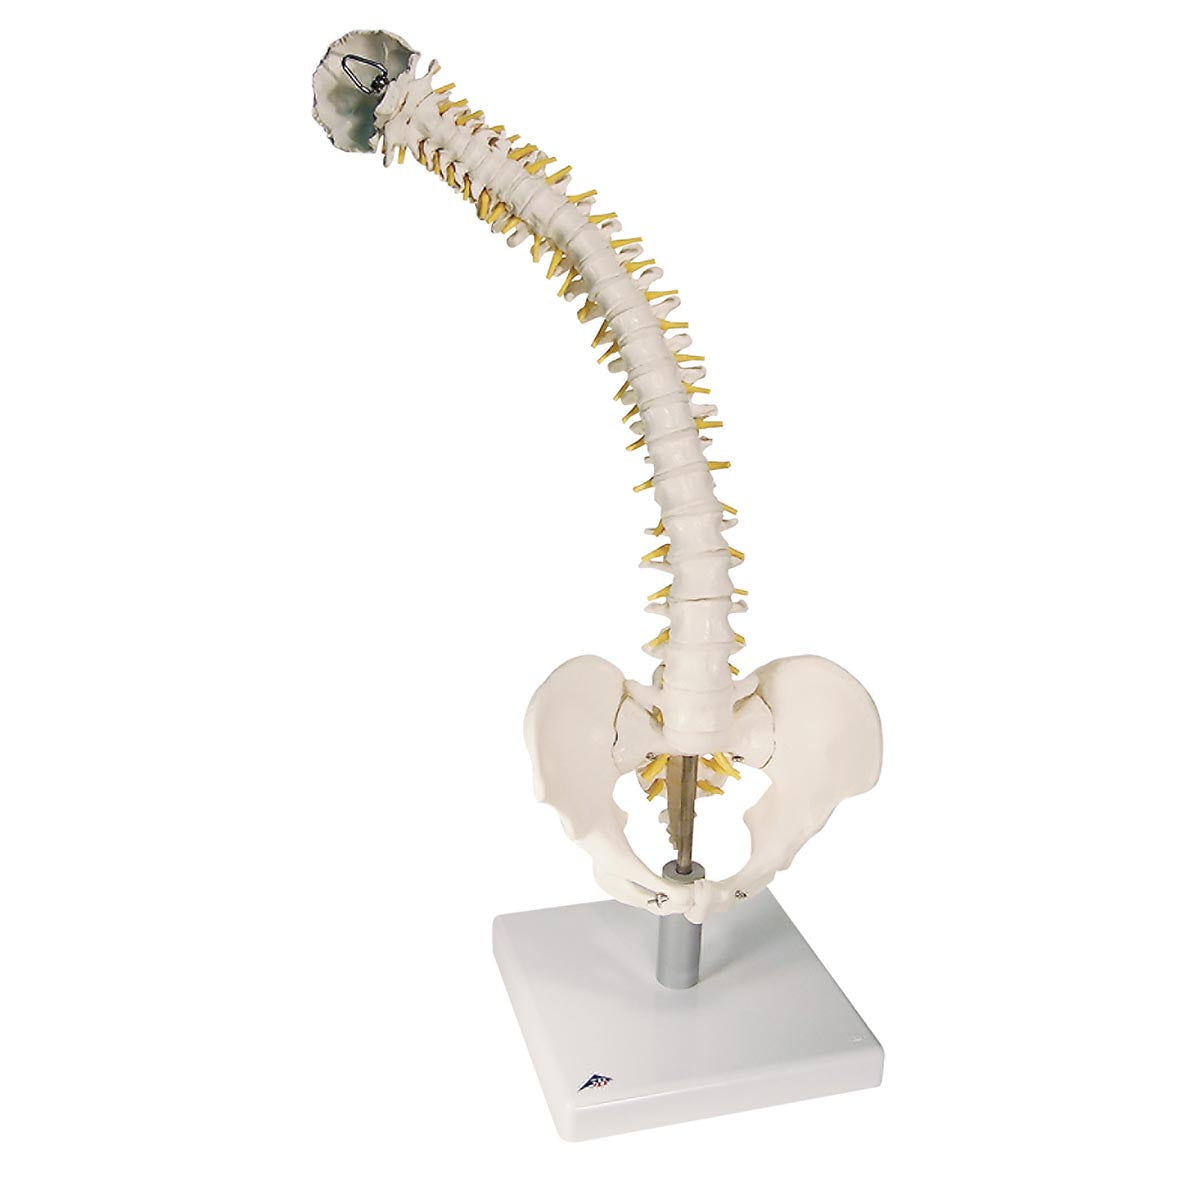 Fleksibel model af rygsøjlen med ekstrabløde diskus, nerver m.m. præsenteret på stander